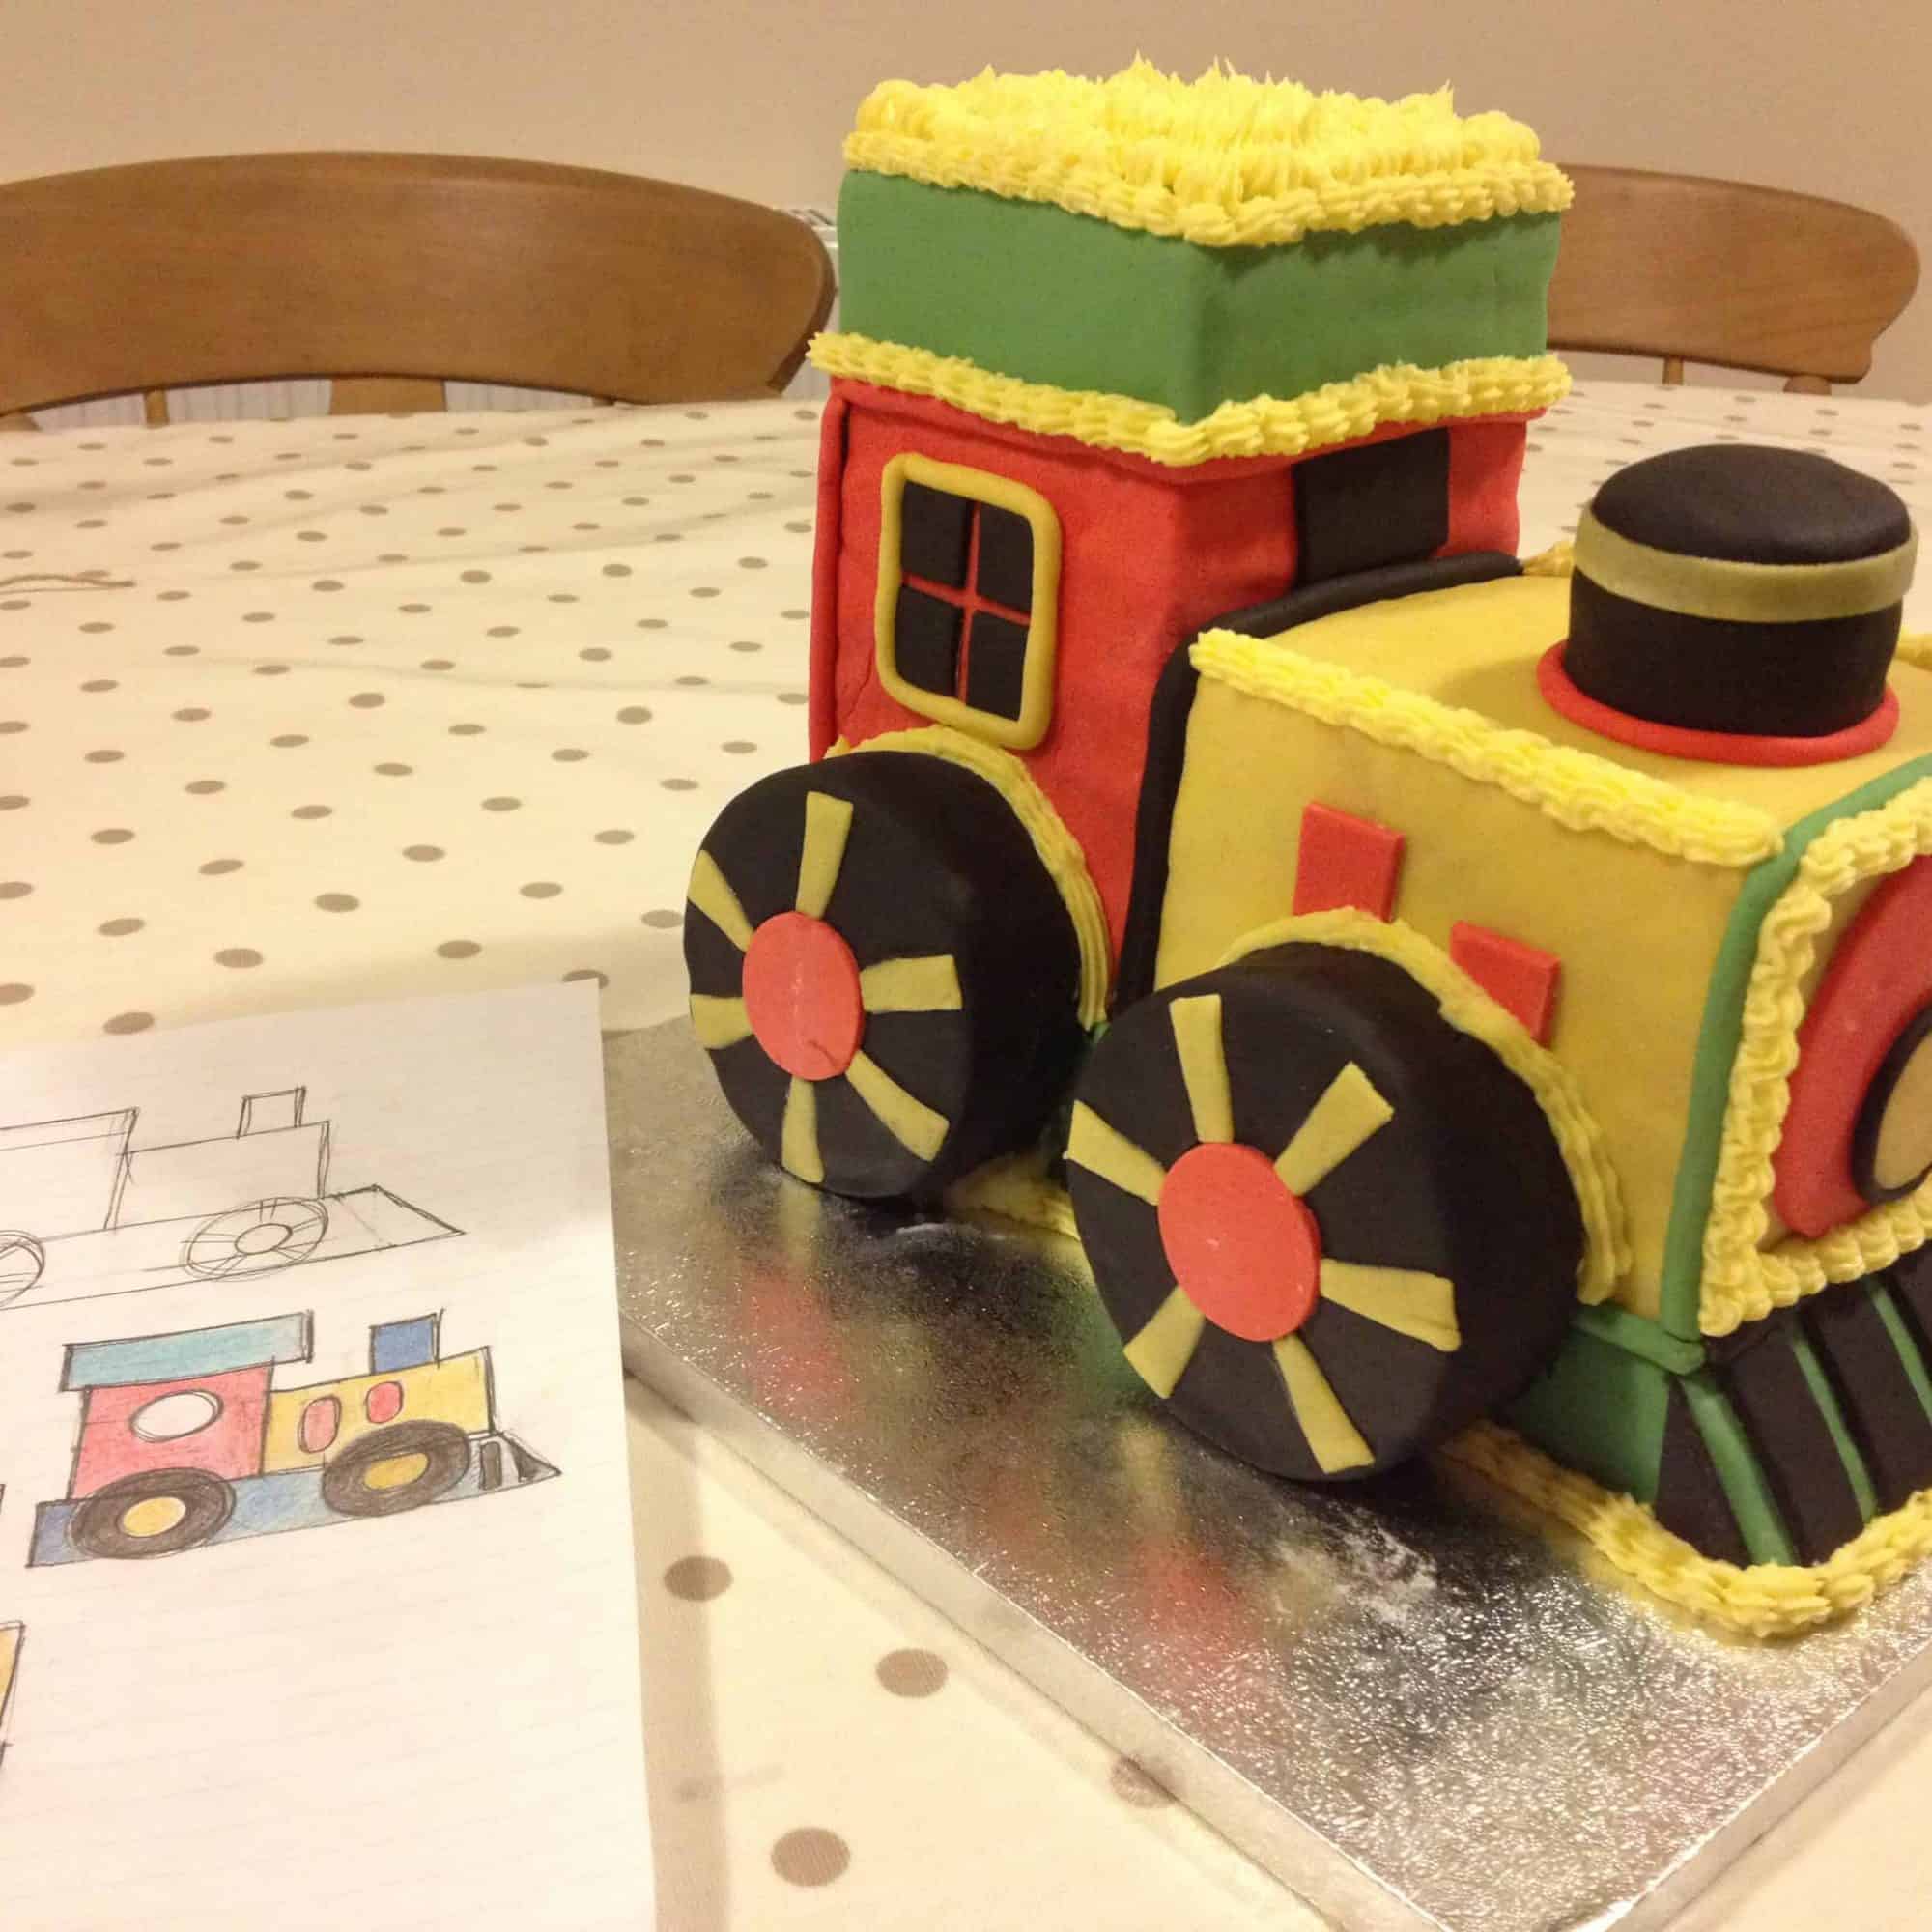 Train birthday cake